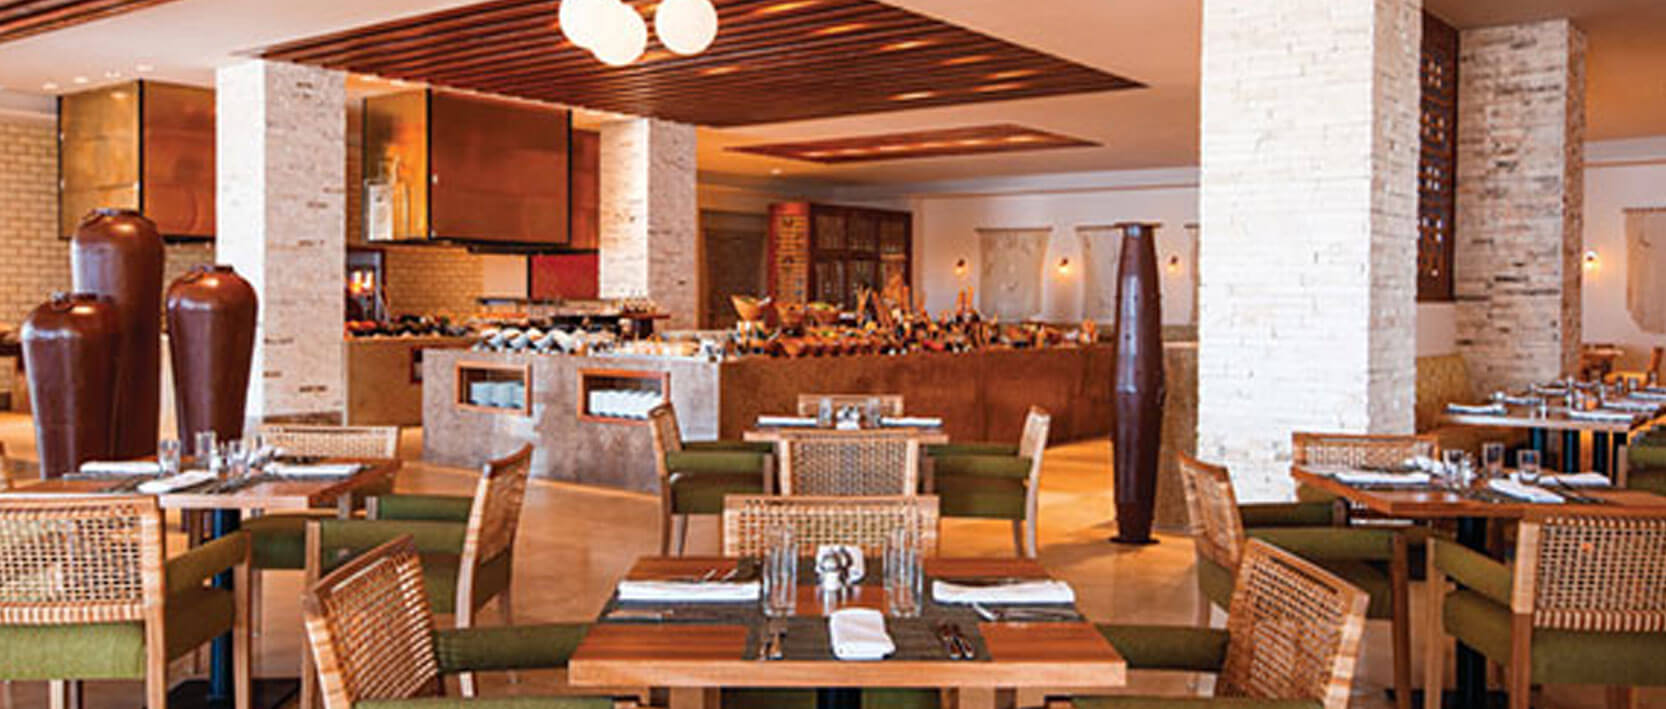 Hyatt Ziva Puerto Vallarta Restaurants and Bars - Vivaz Buffet